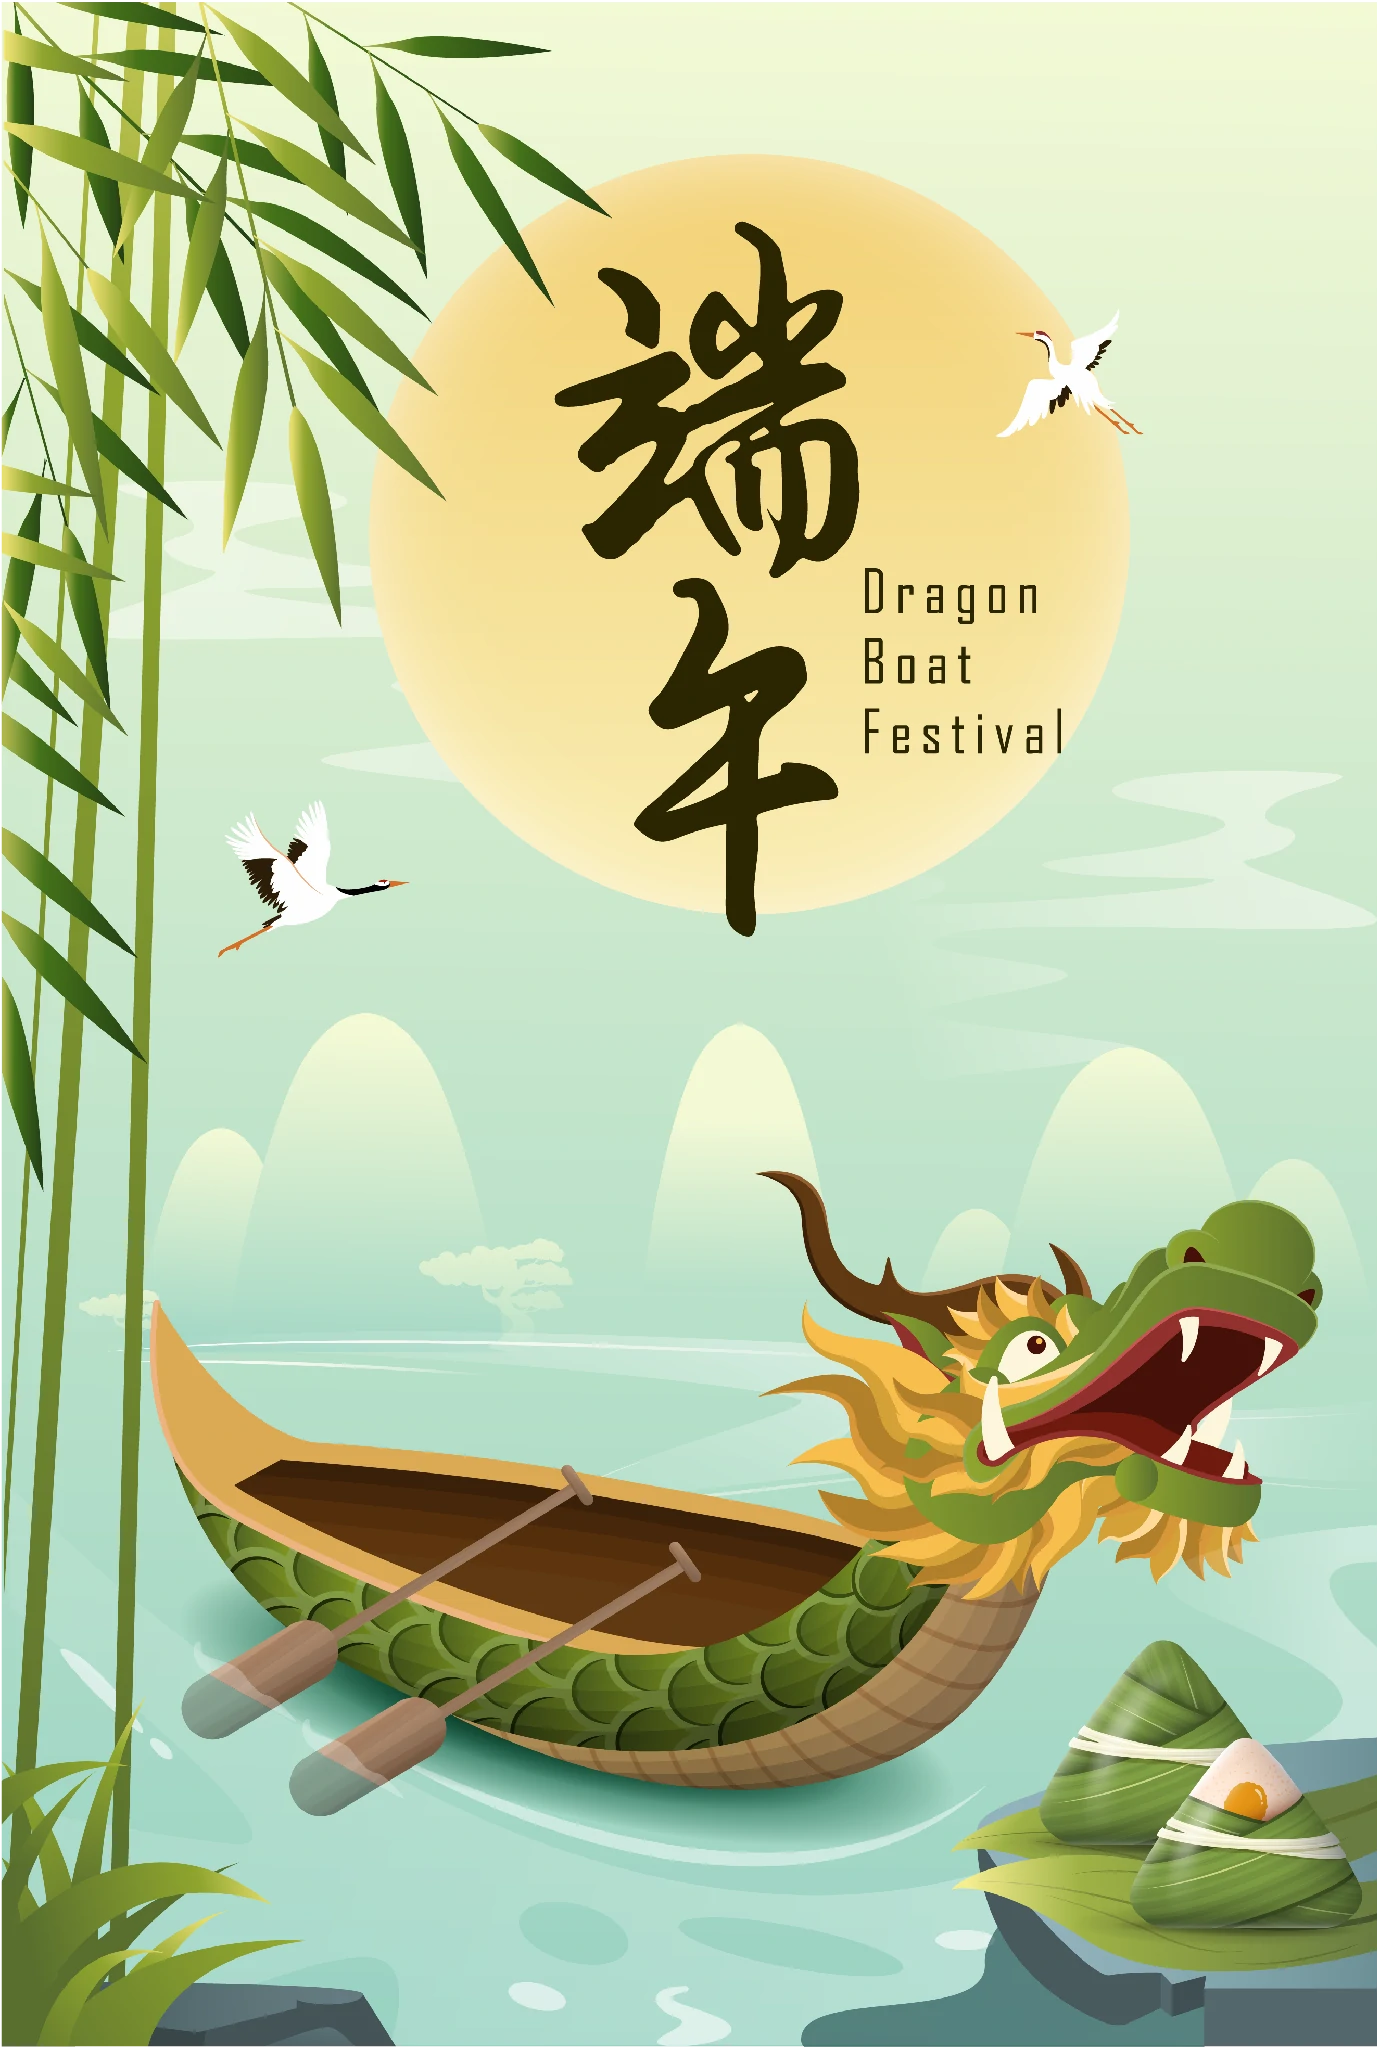 中国传统节日端午节端午安康赛龙舟包粽子插画海报AI矢量设计素材【017】